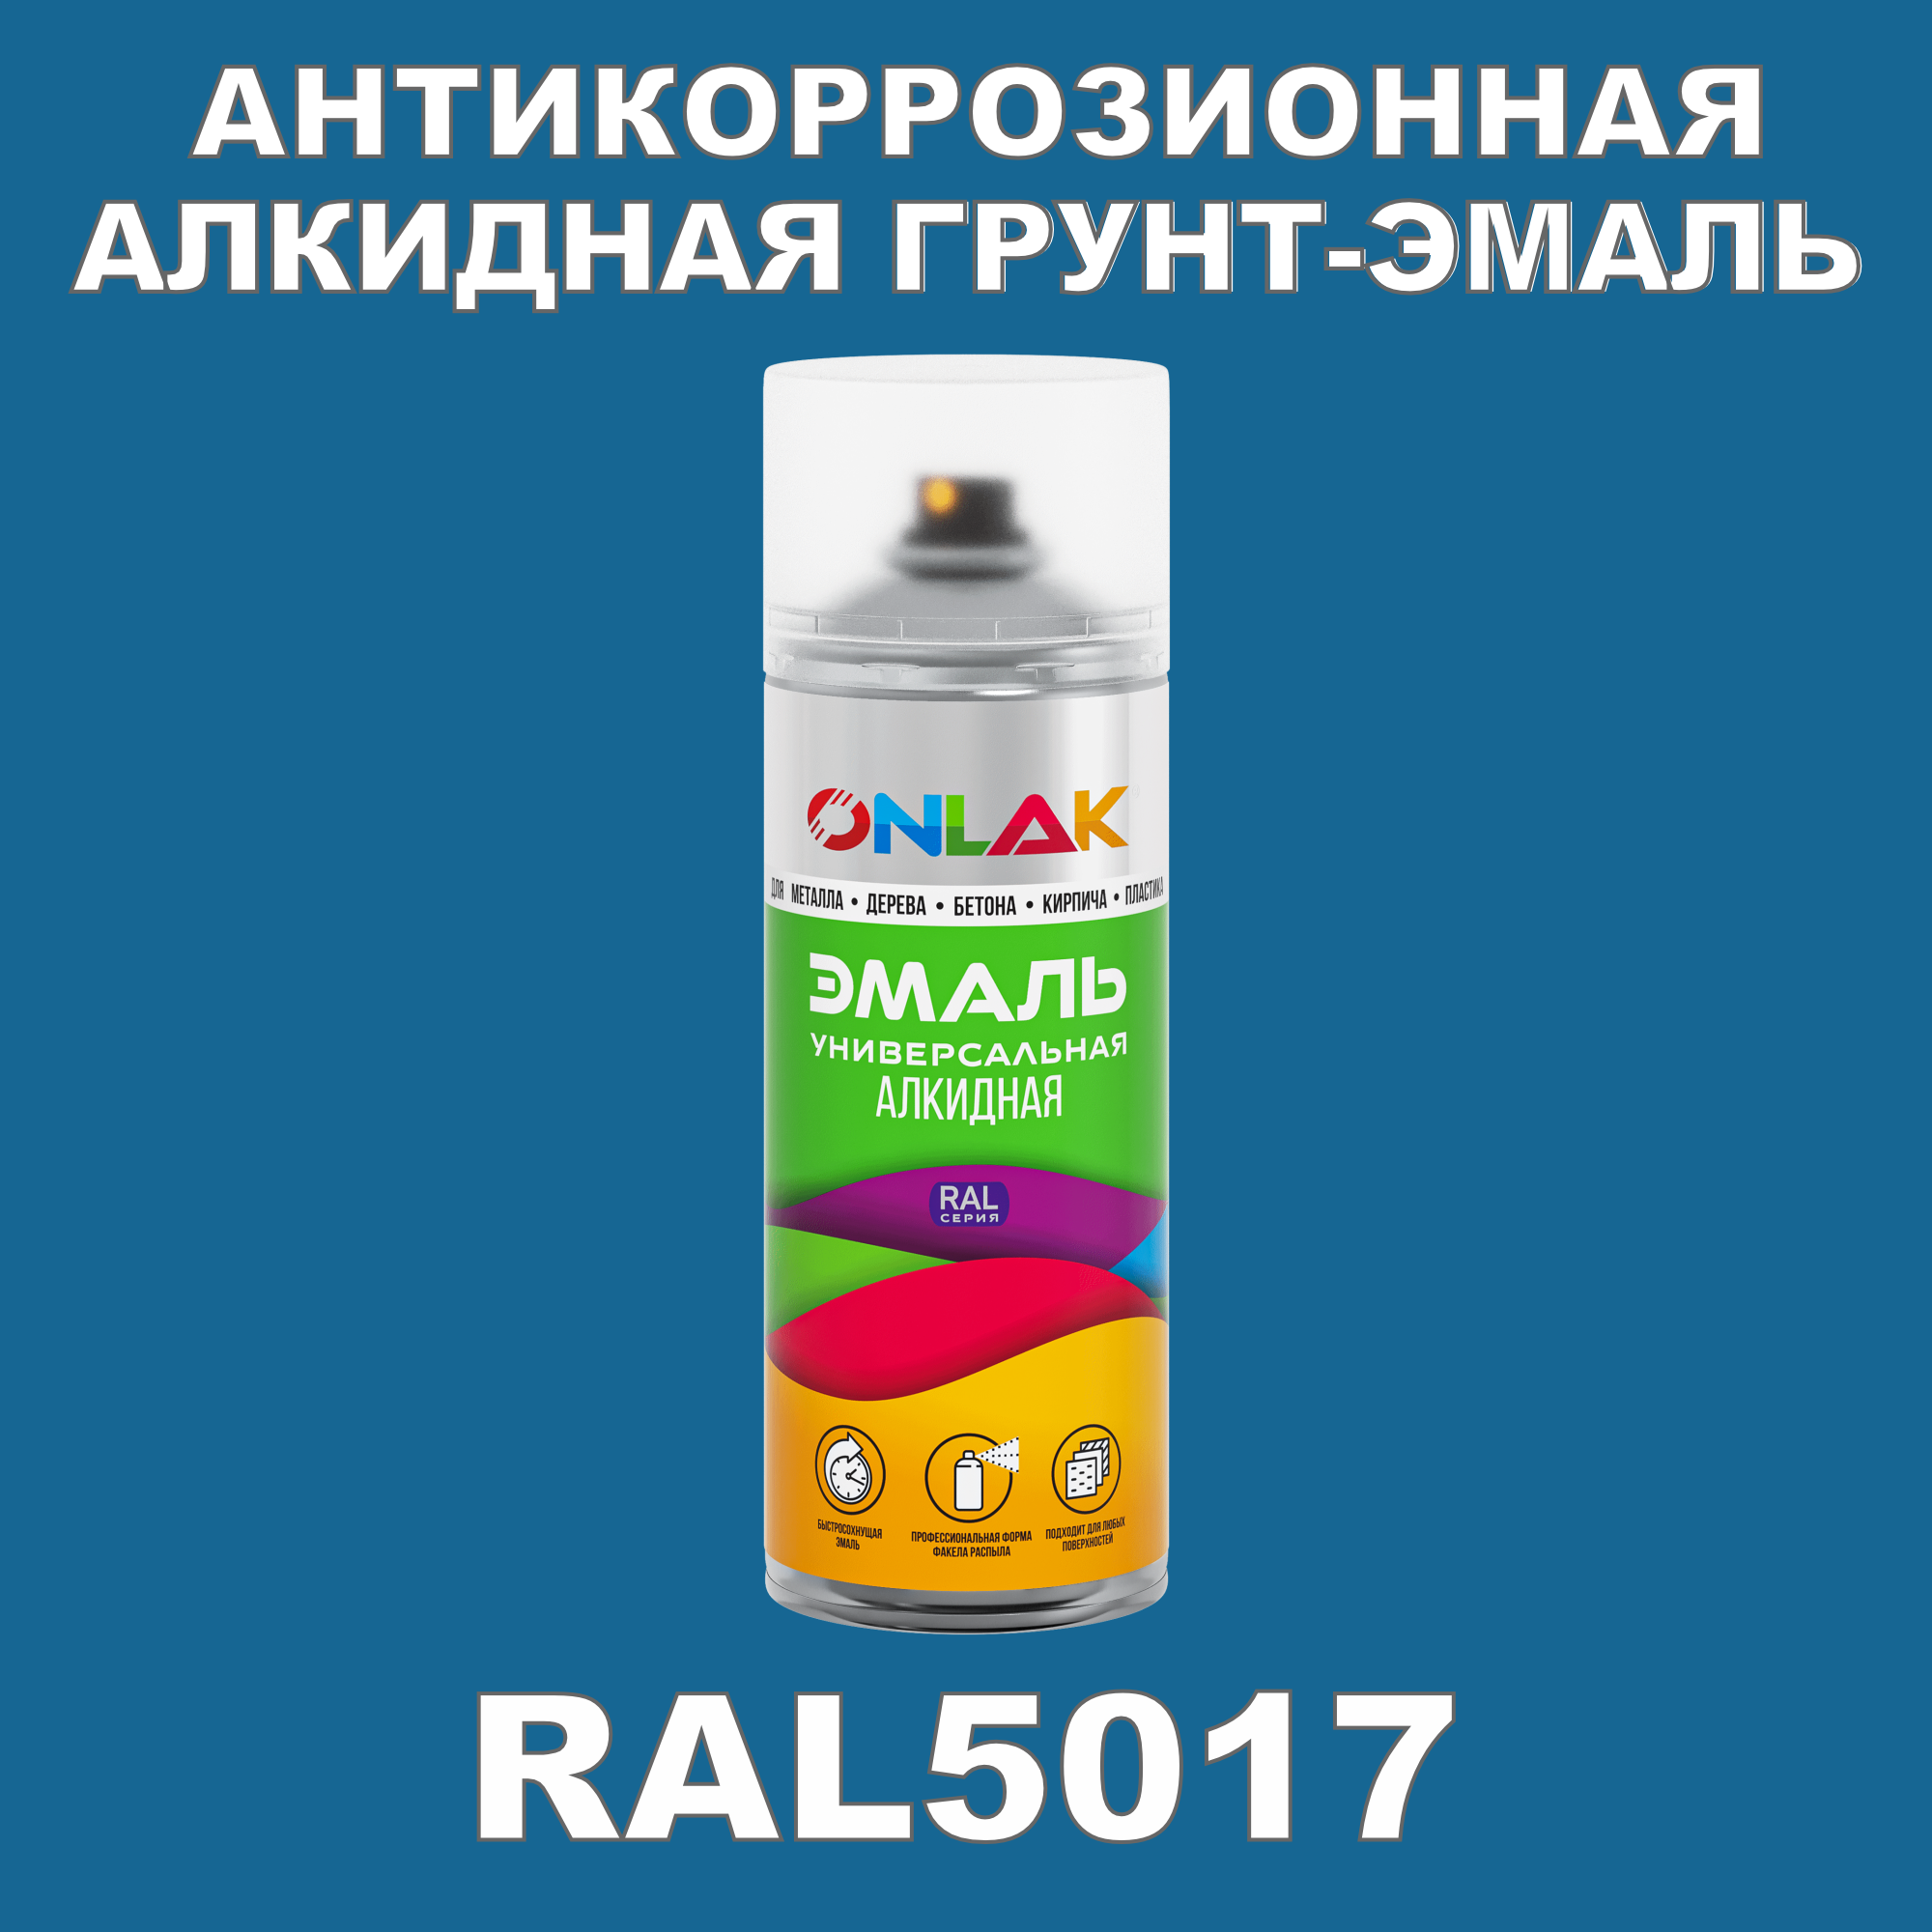 Антикоррозионная грунт-эмаль ONLAK RAL5017 полуматовая для металла и защиты от ржавчины